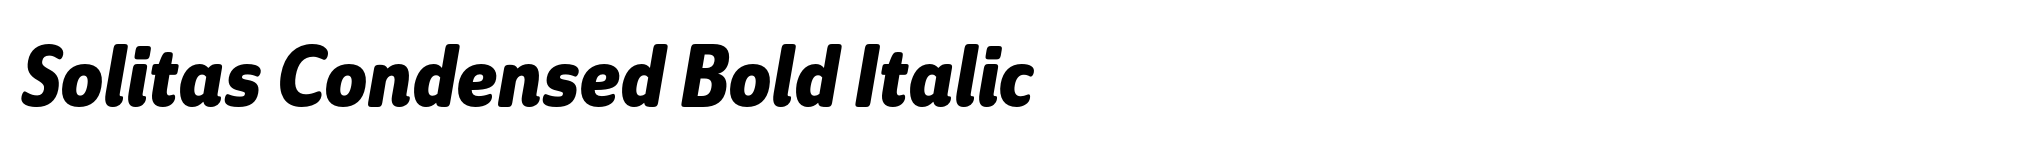 Solitas Condensed Bold Italic image